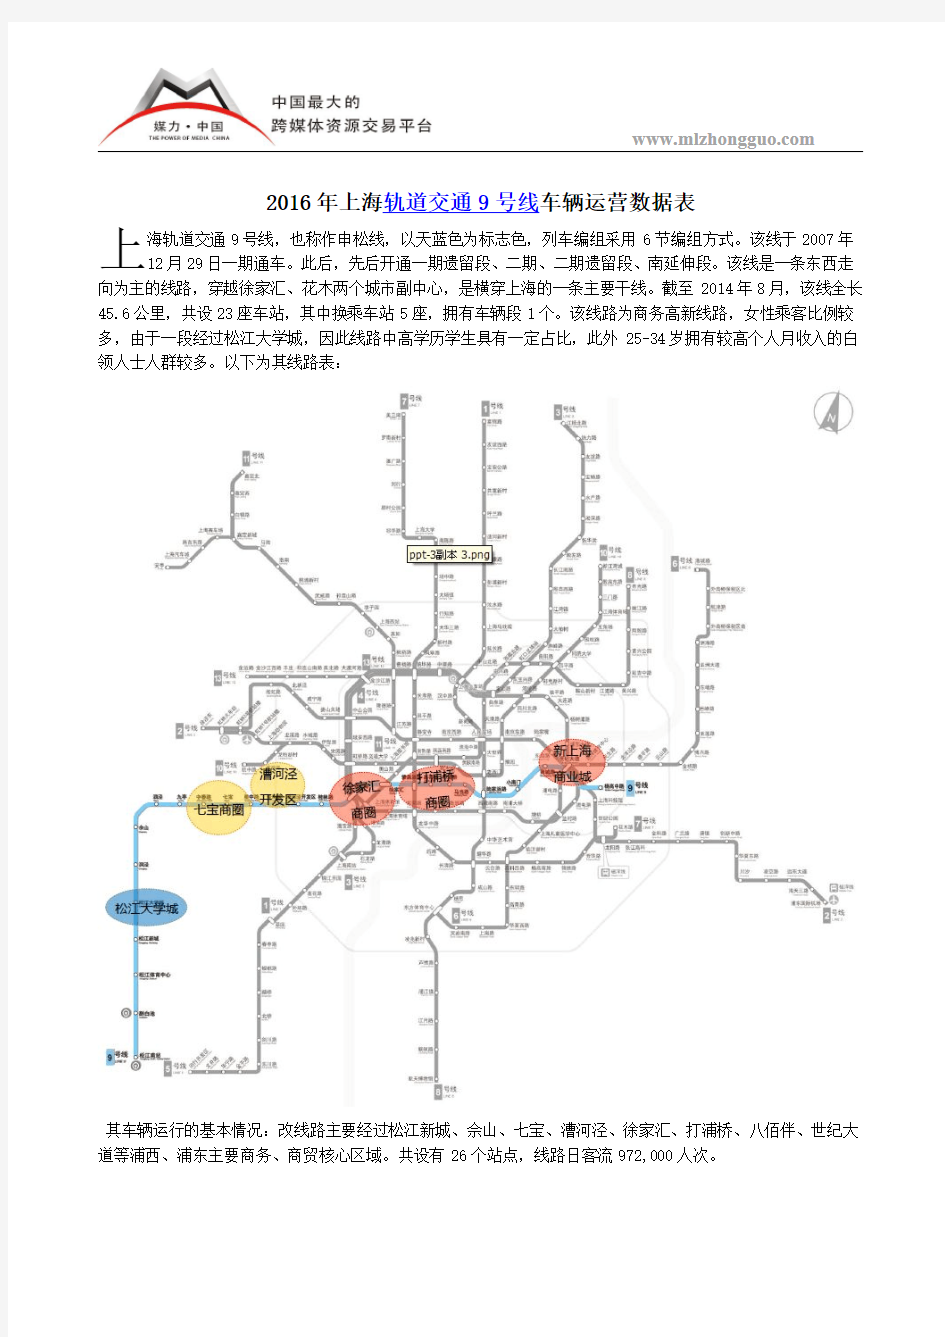 2016年上海轨道交通9号线车辆运营数据表